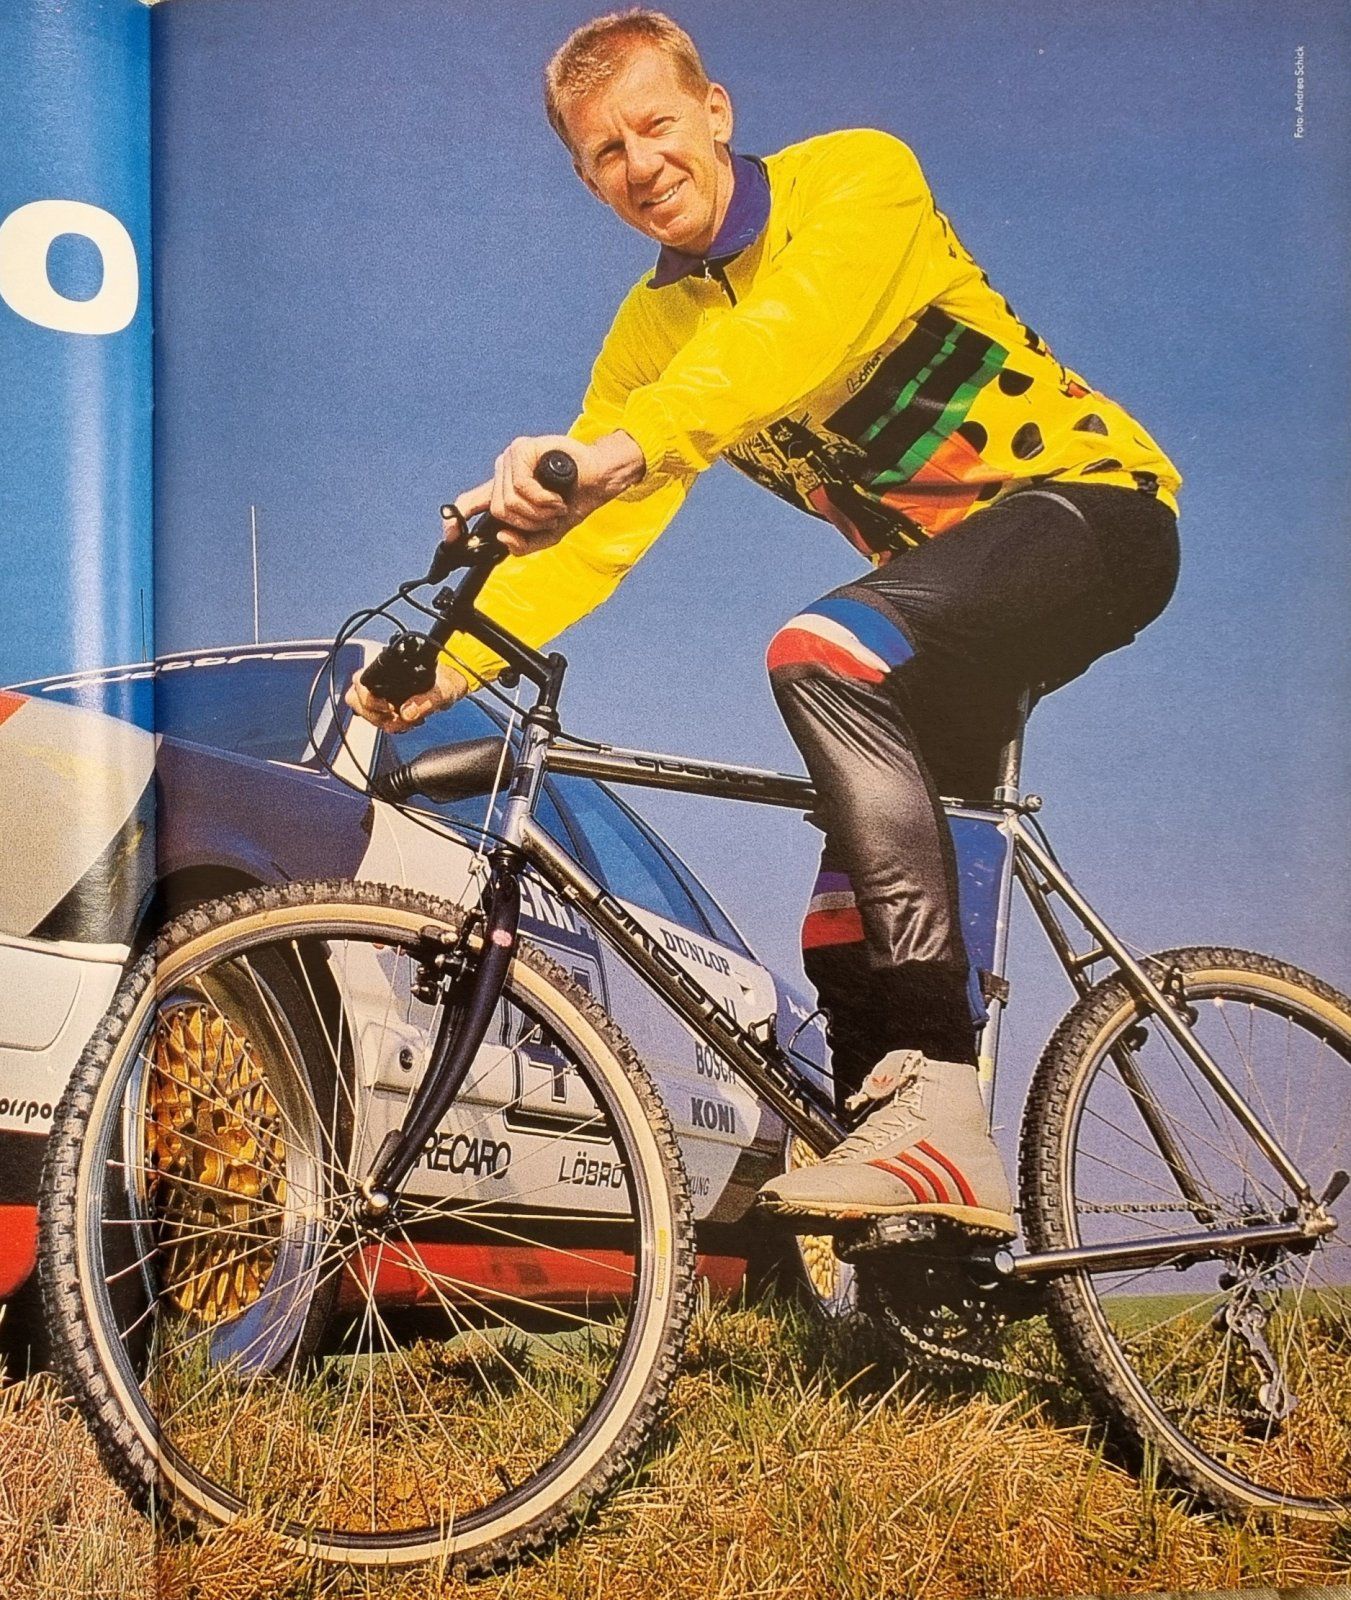 Walter Röhrl Bericht s1 aus Bike 3 1990 bild.jpg